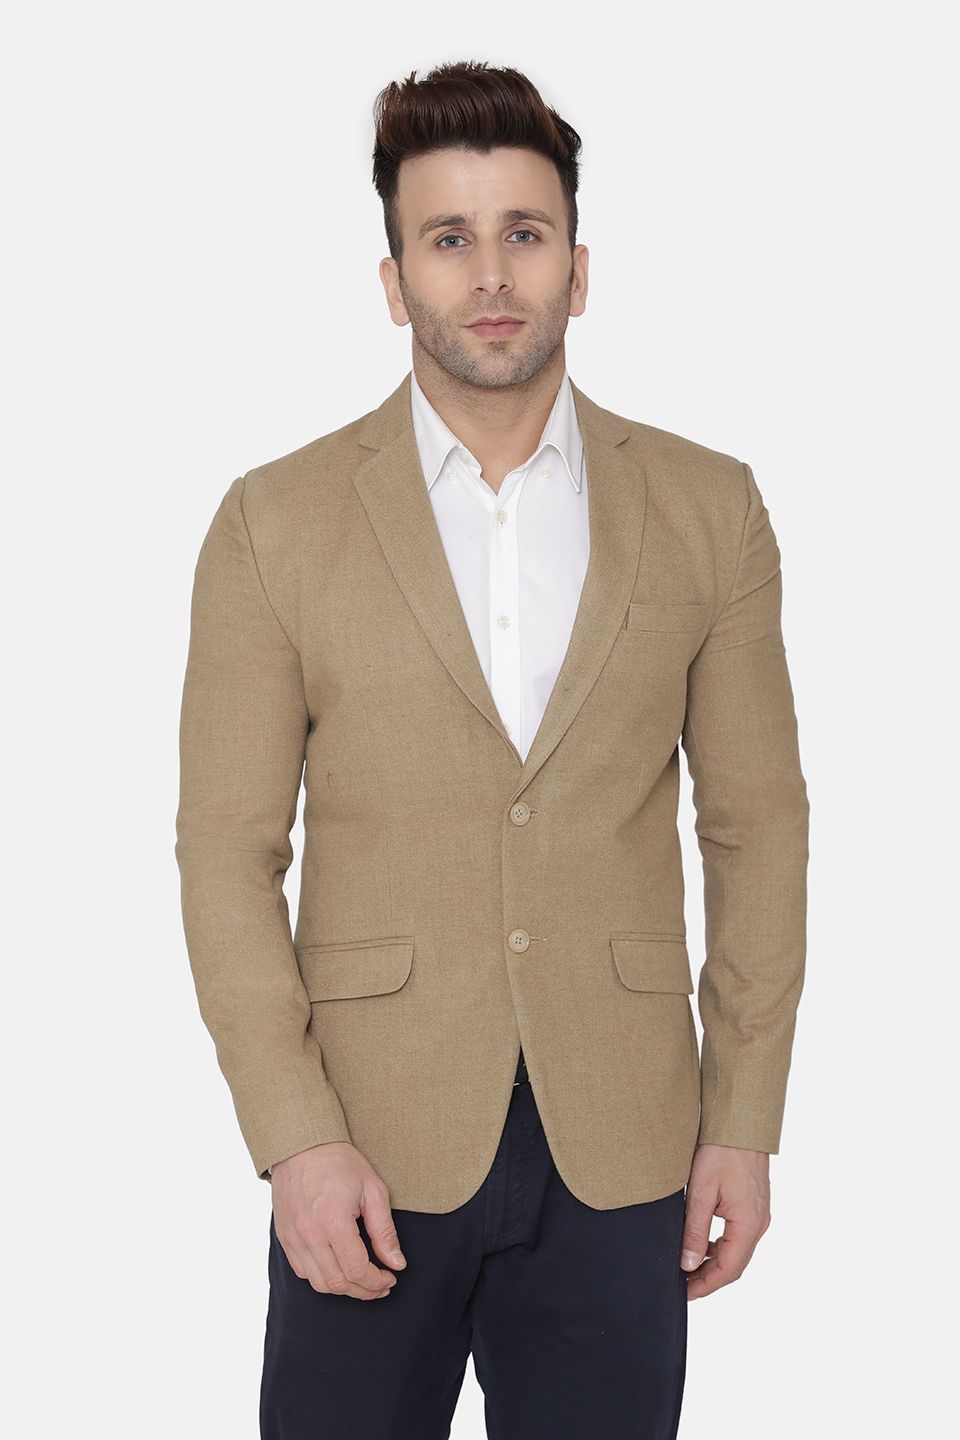 Wintage Men's Wool Casual and Festive Blazer Coat Jacket : Beige